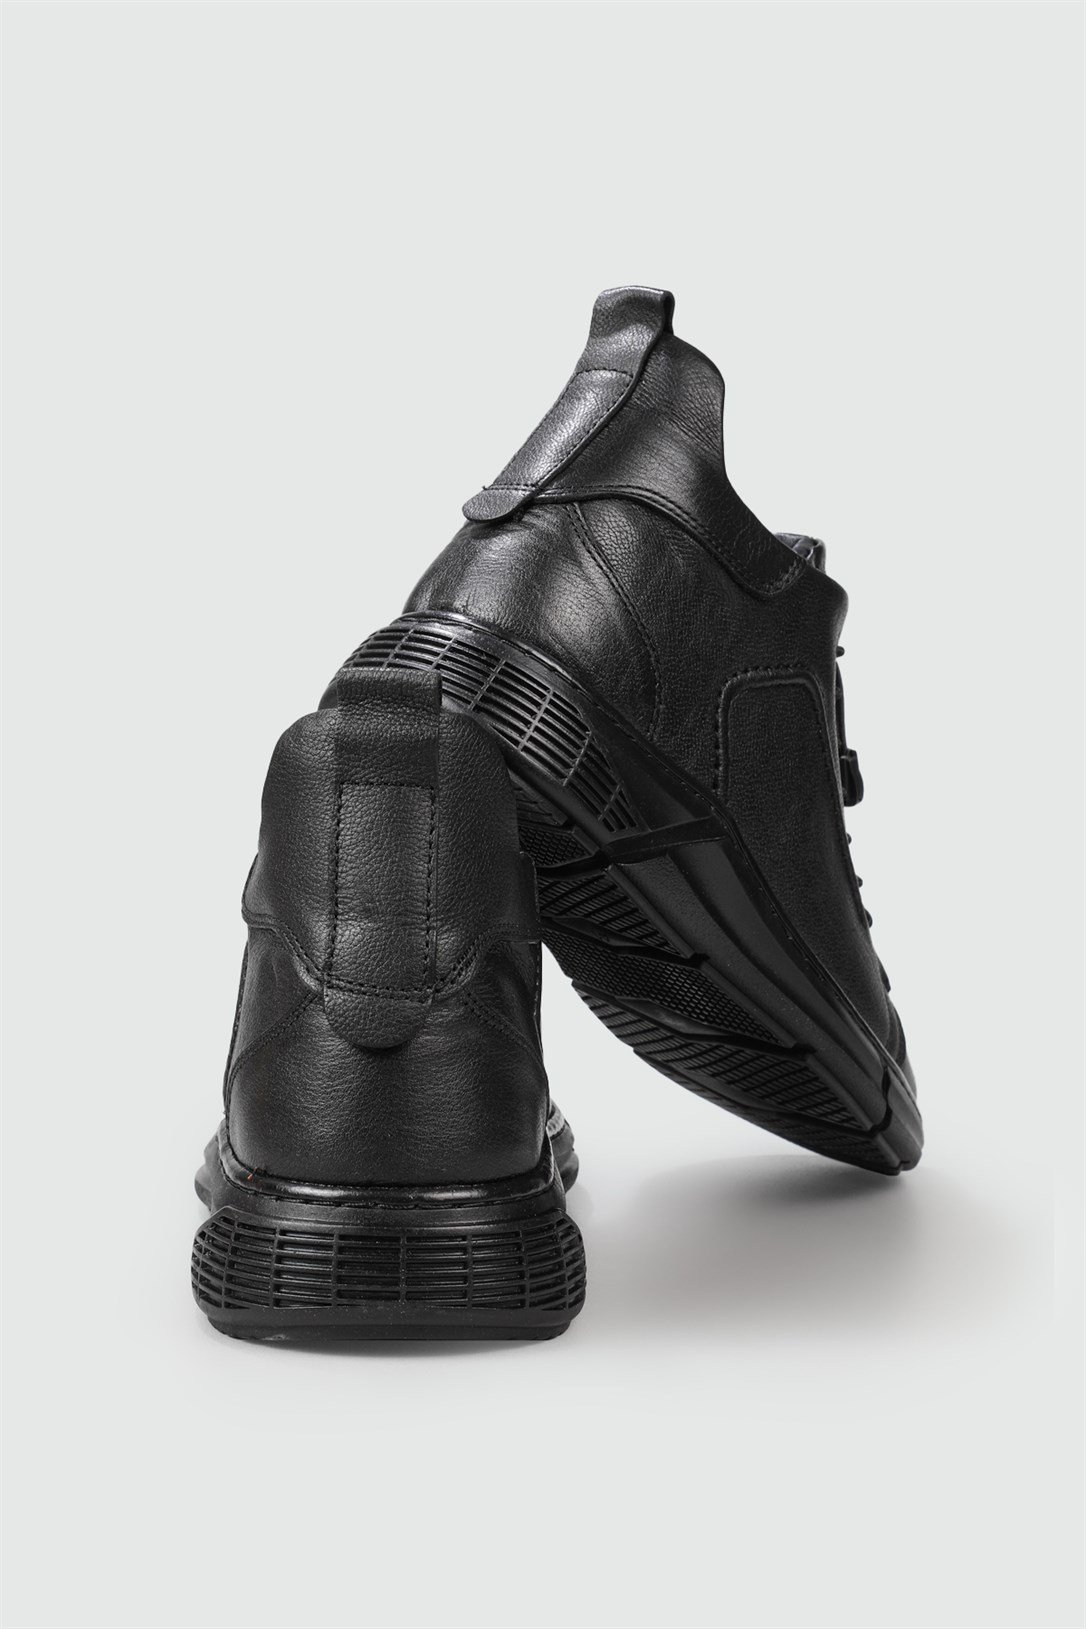 Wow Plus Hakiki Deri Kaydırmaz Kauçuk Taban Siyah Erkek Bot MNS-204 |  Ayakkabı City